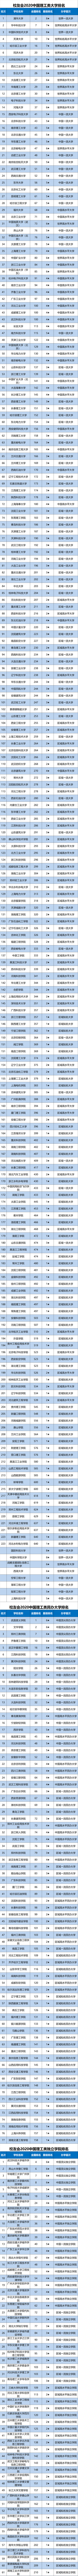 2020建筑专业全国排名_2020中国大学水利工程专业排名,清华大学第二,第一实